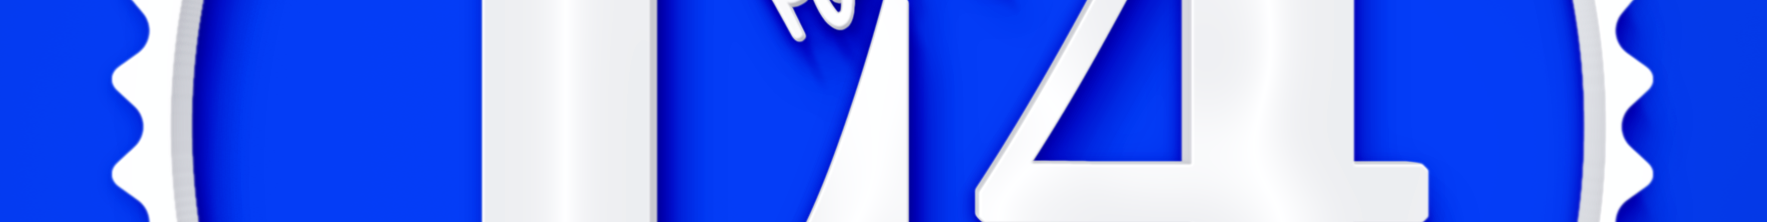 Milos L4 Art Design's profile banner